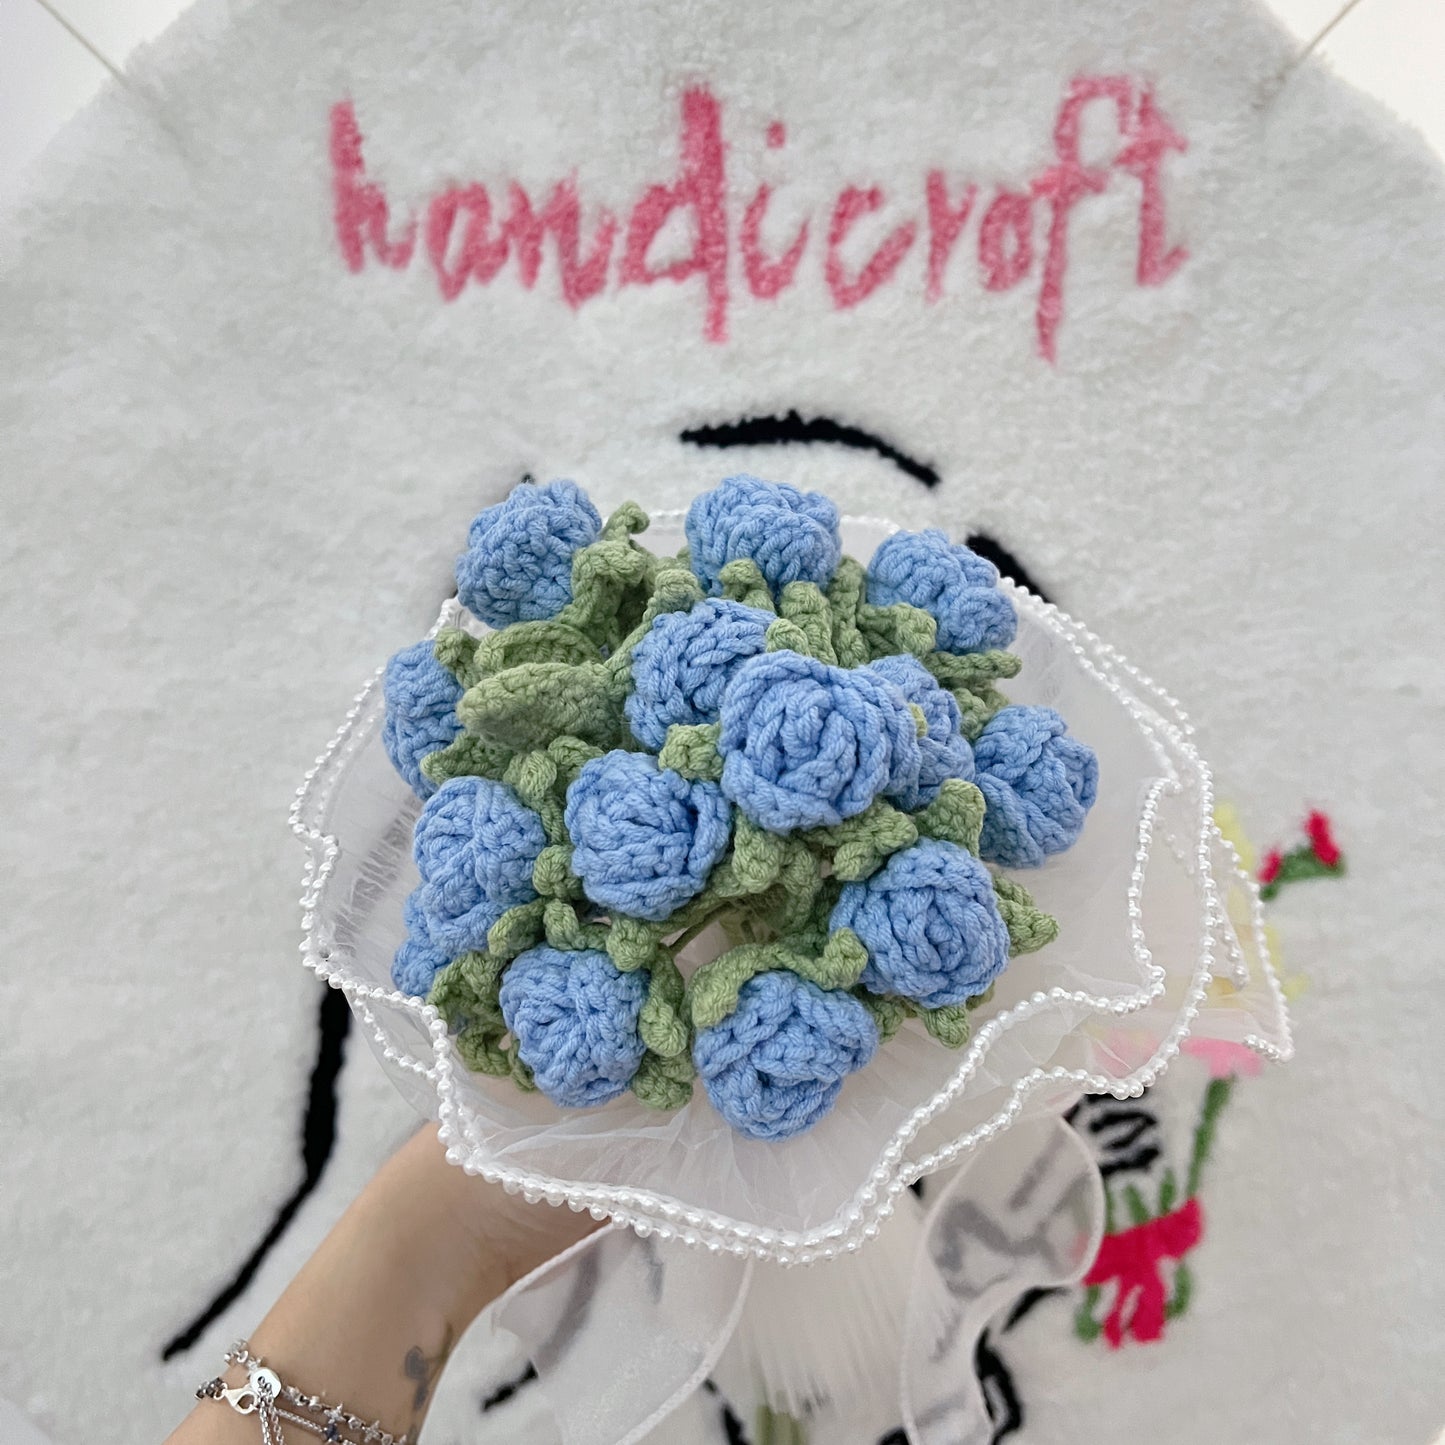 ocean's whispers - blue mini roses crochet flower bouquet 🌊 𓈒 𓆡 ⭒𓈒 🫧